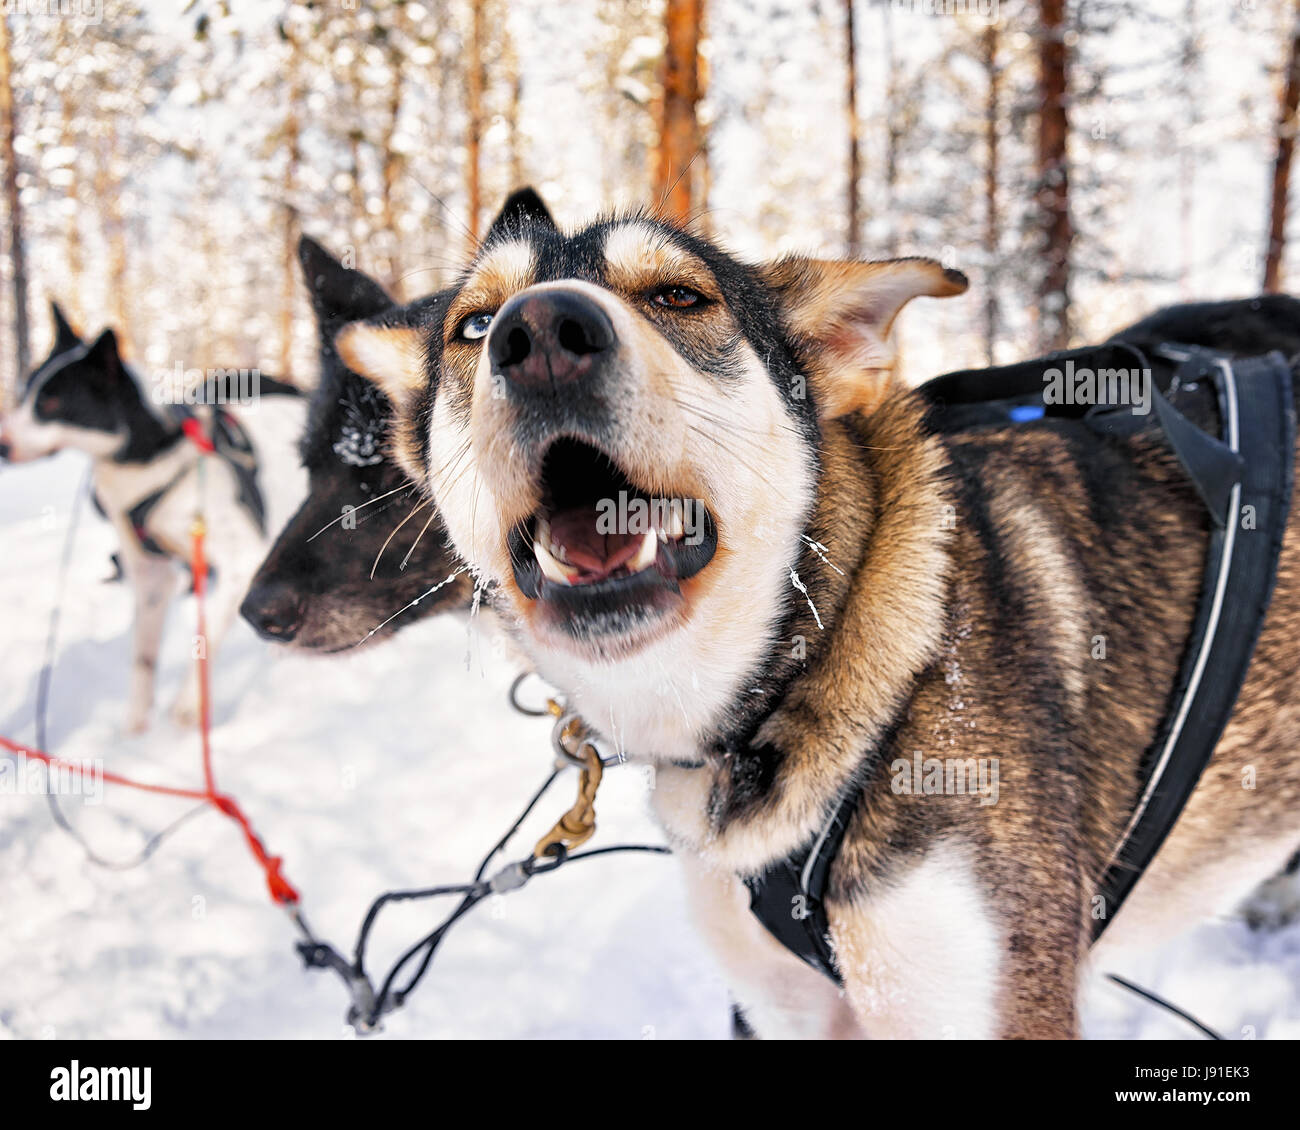 En traîneau à chiens husky ferme Rovaniemi, Laponie, Finlande Banque D'Images